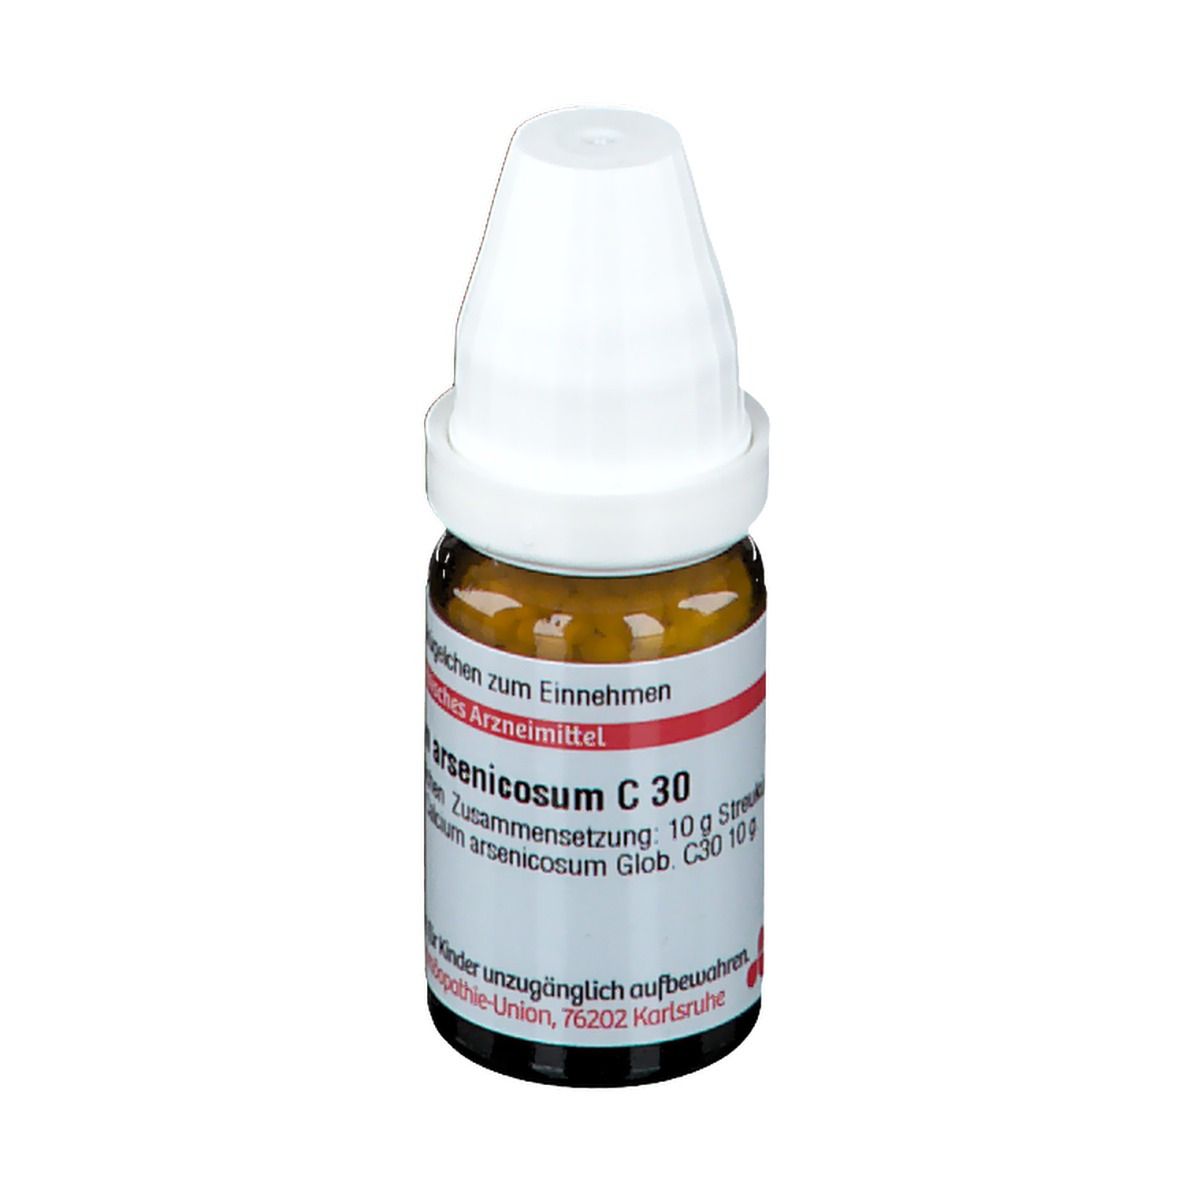 DHU Calcium Arsenicosum C30